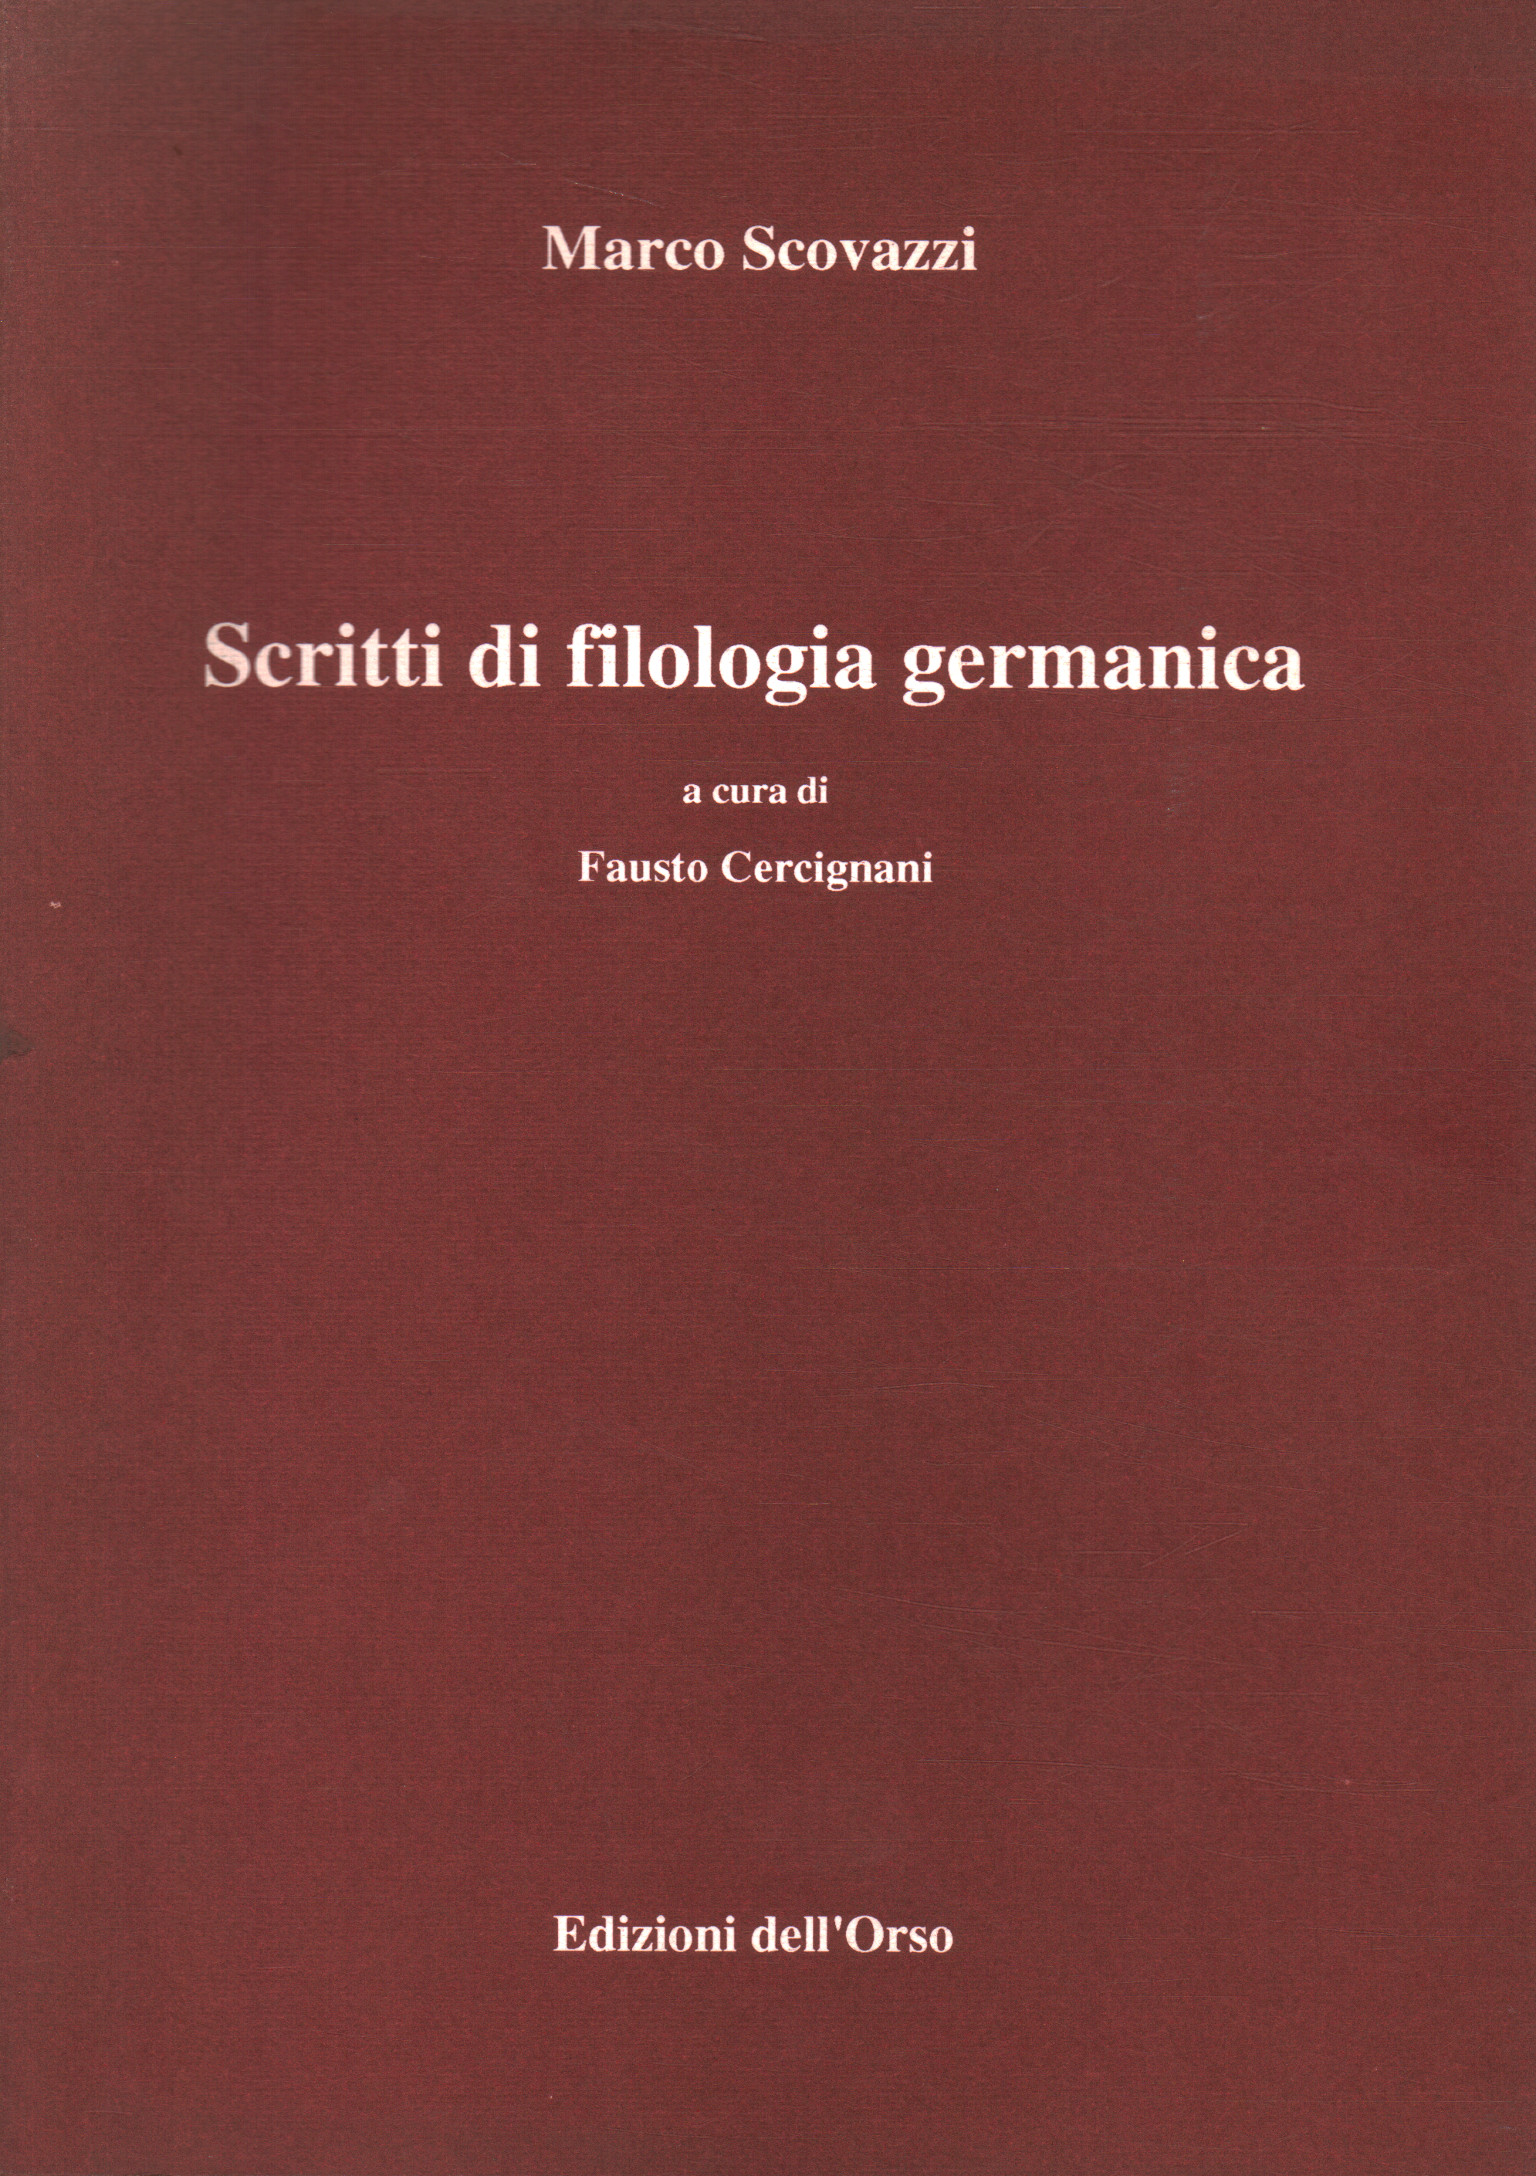 Scritti di filologia germanica